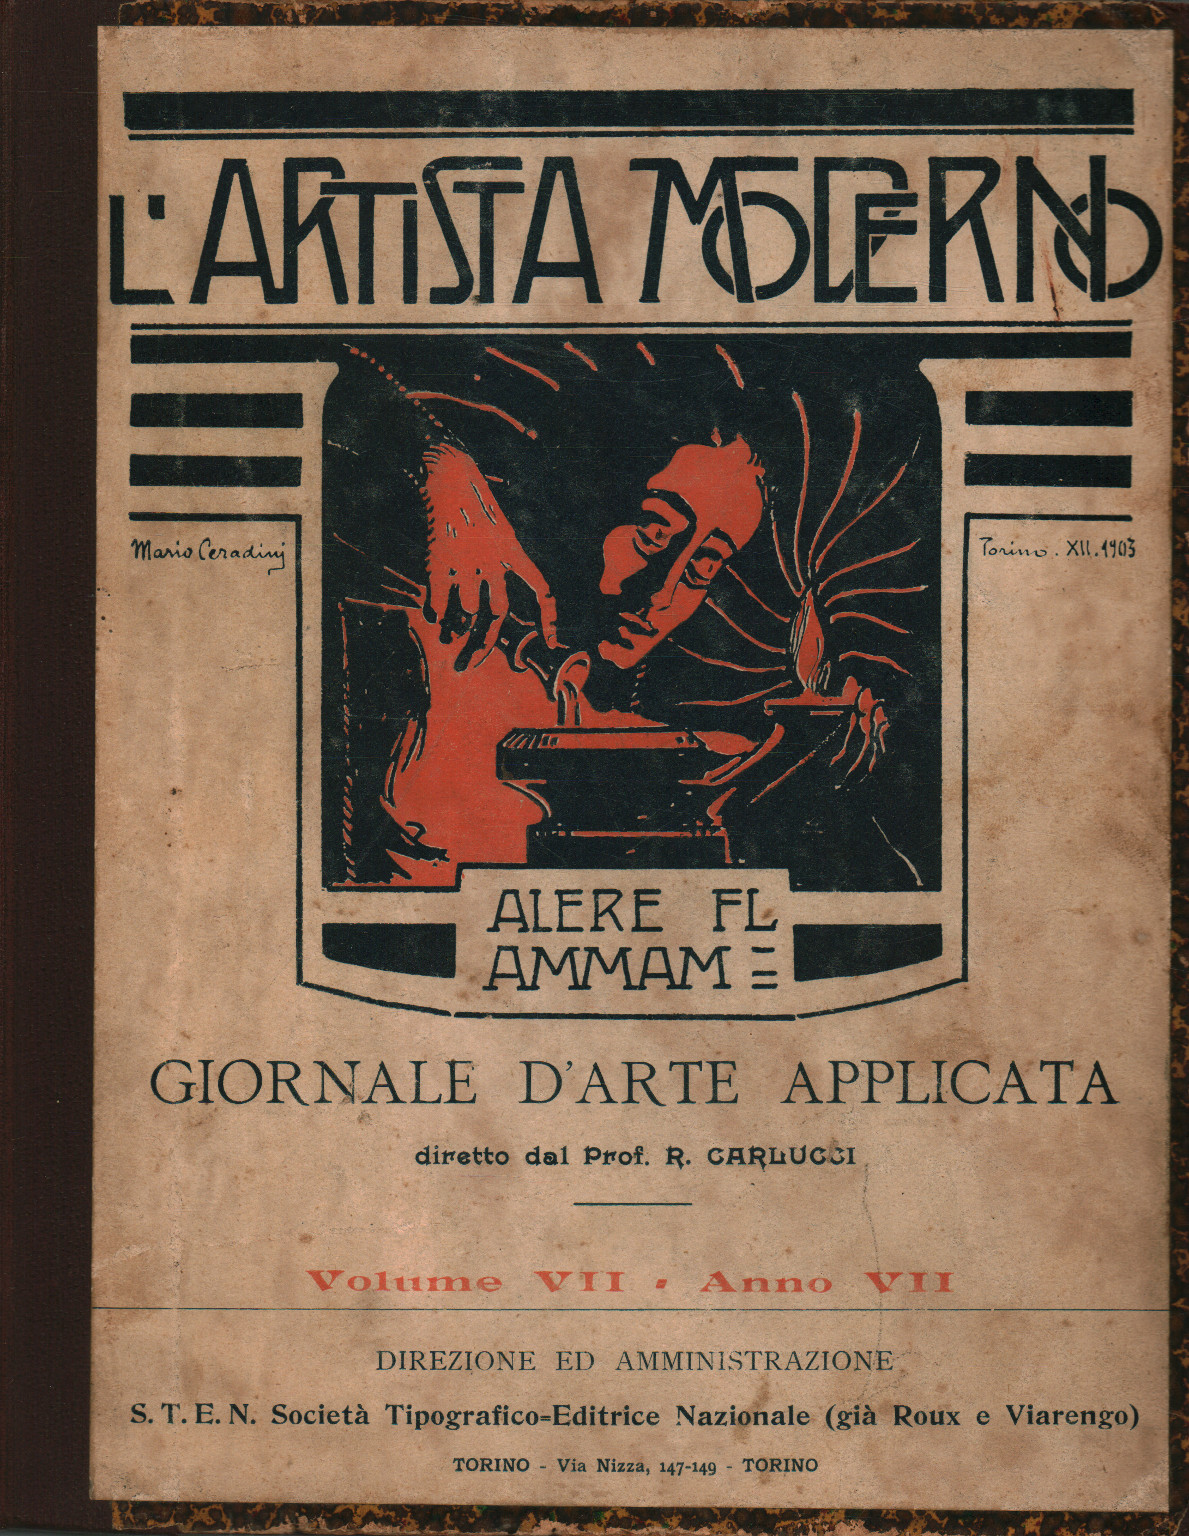 L artista moderno Vol. VII, Año VII, 1908, s.una.